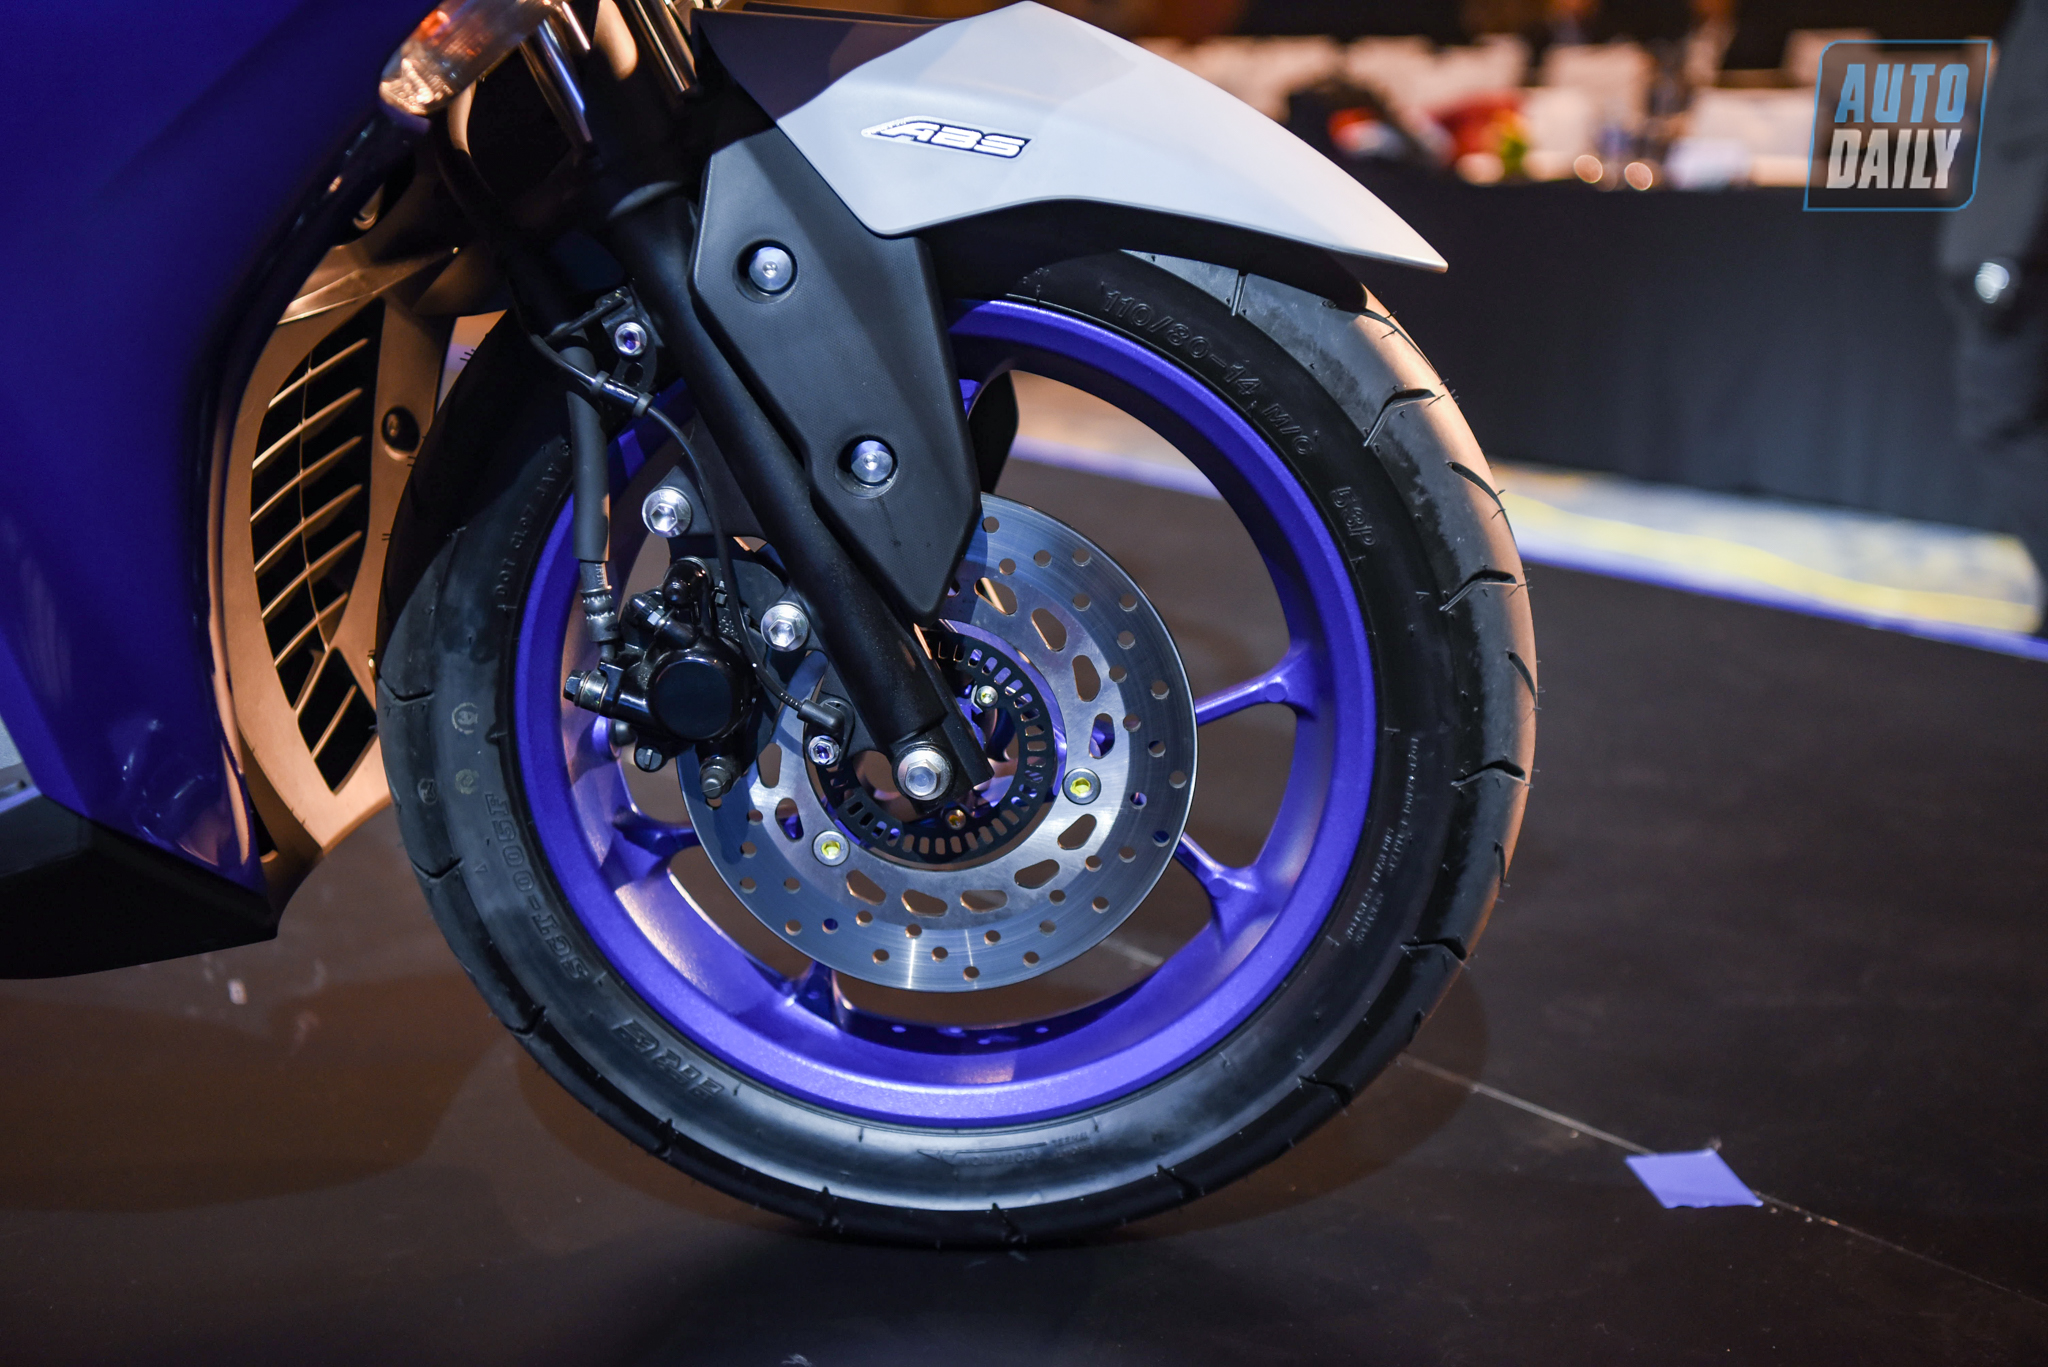 Chi tiết xe tay ga thể thao Yamaha NVX 155 2021 giá từ 53 triệu đồng yamaha-nvx-25.jpg